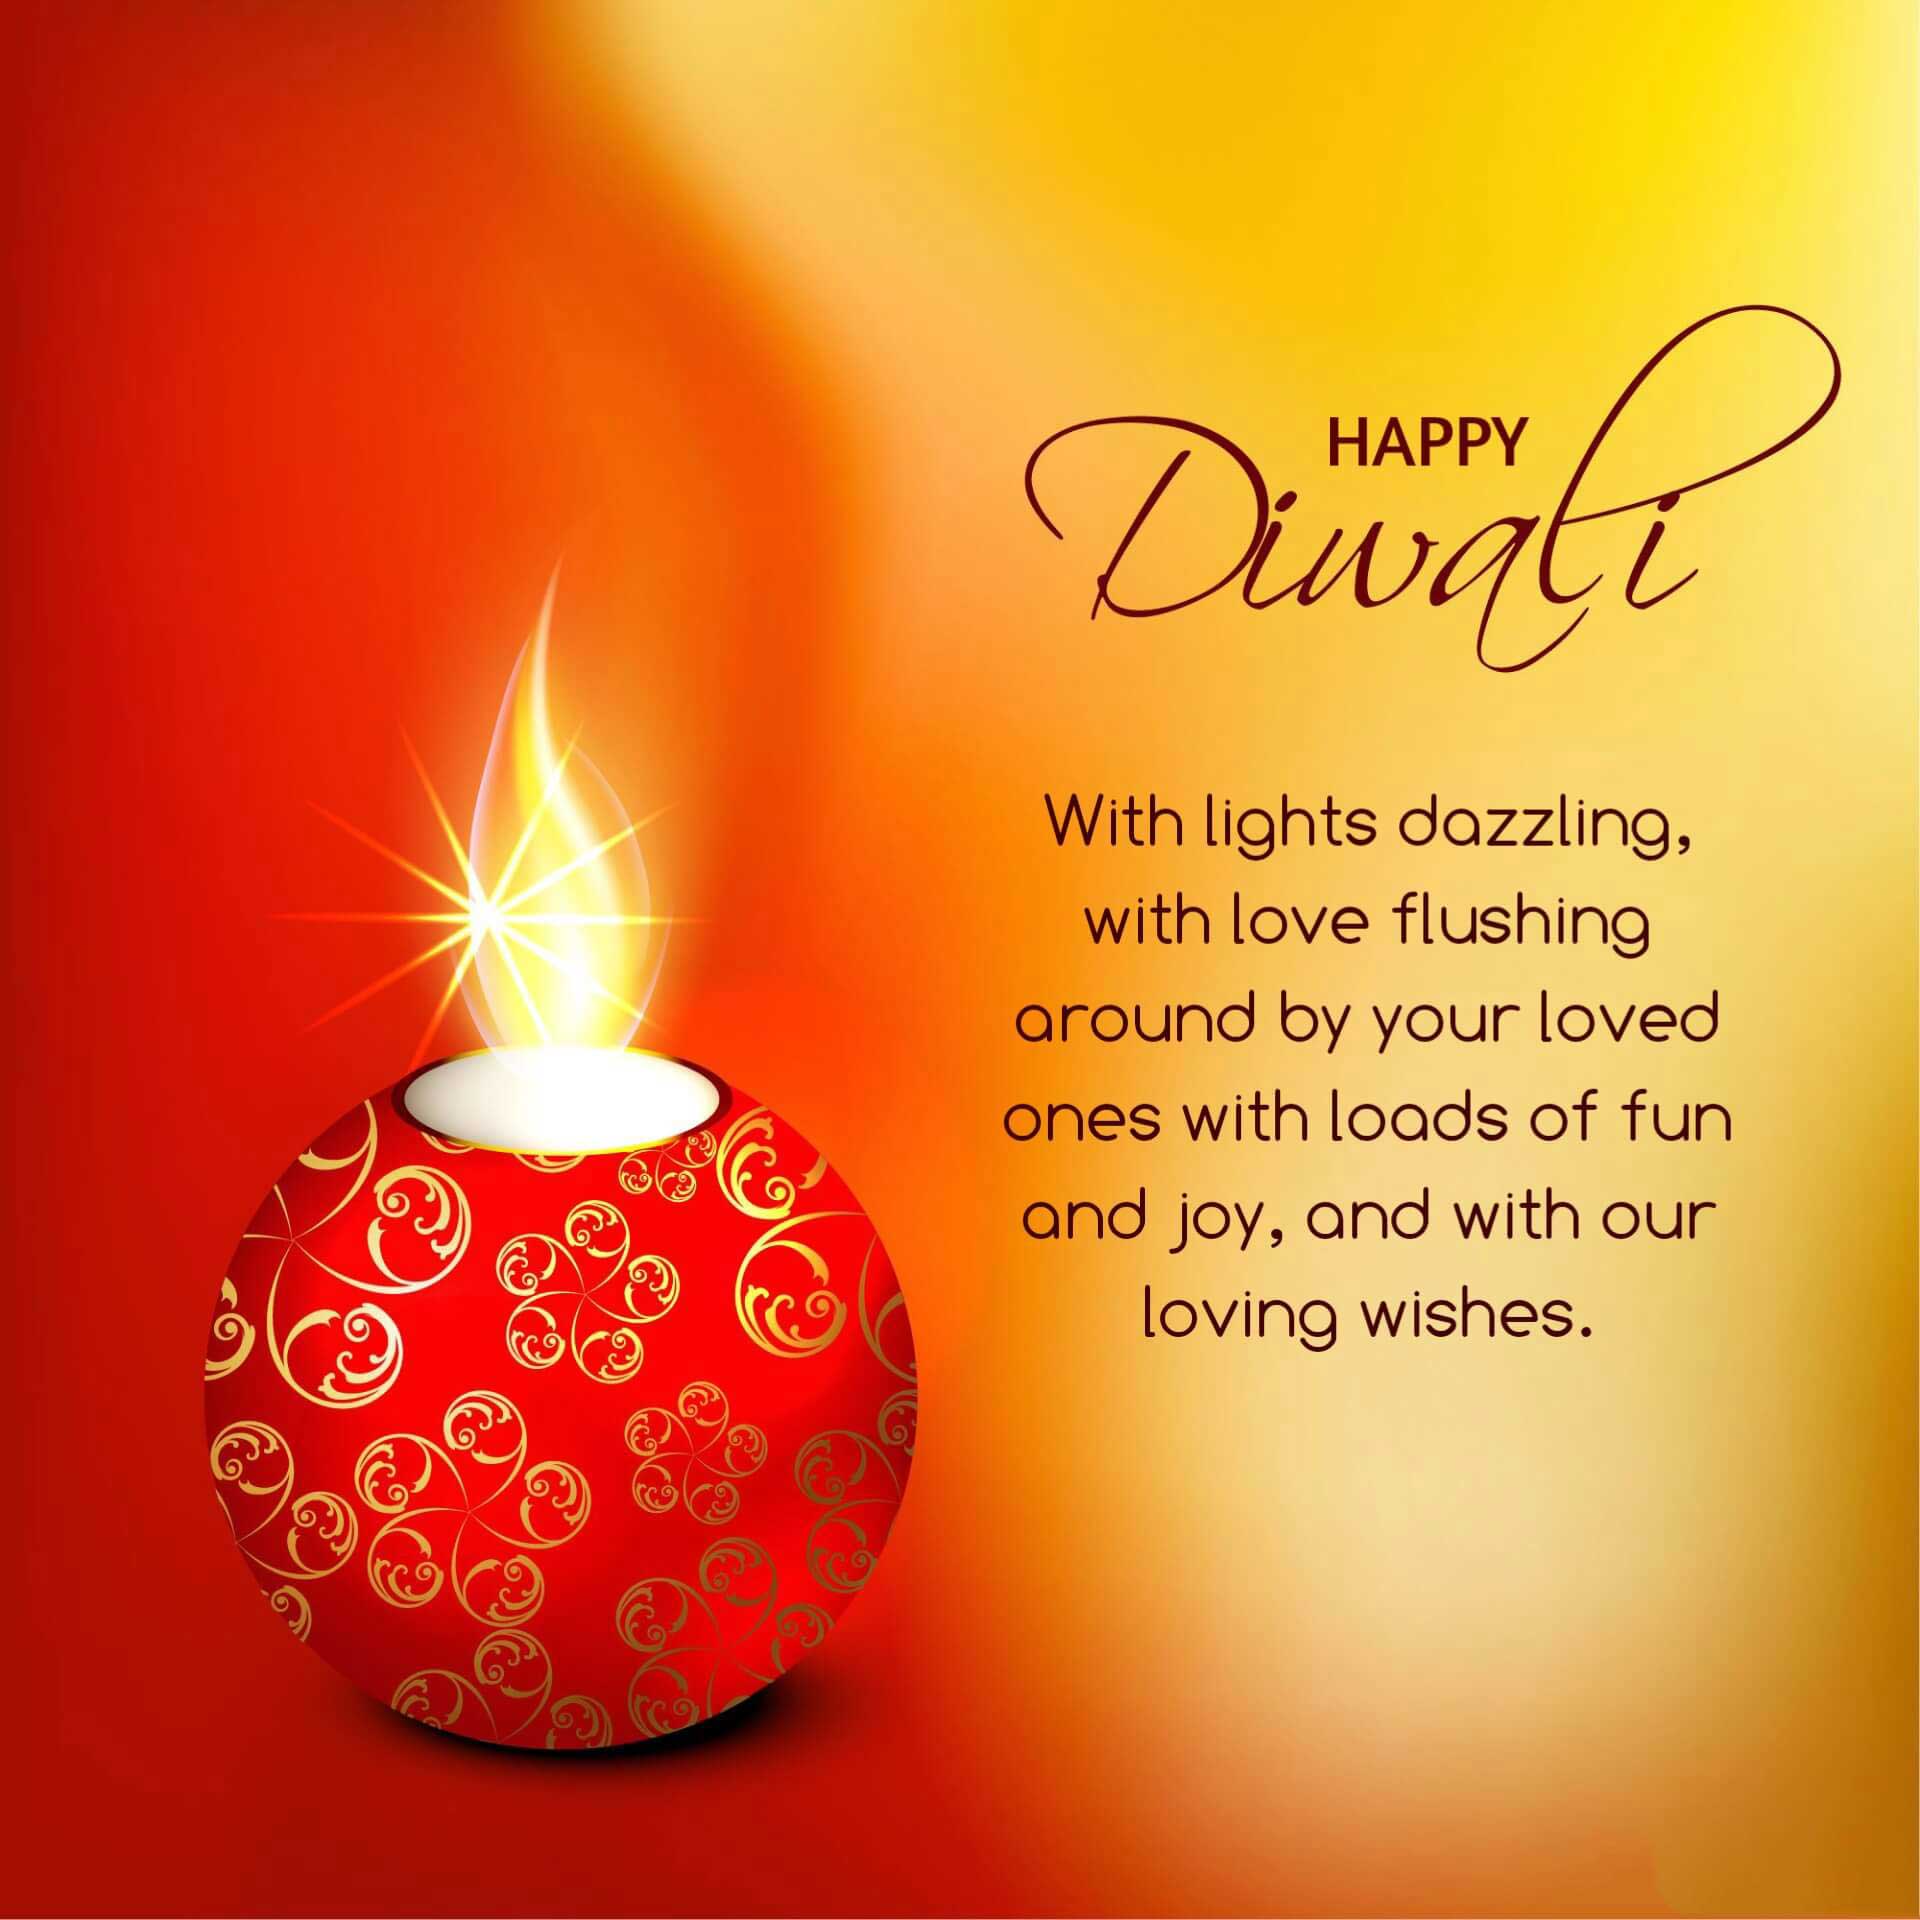 Whatsapp Happy Diwali Wishes